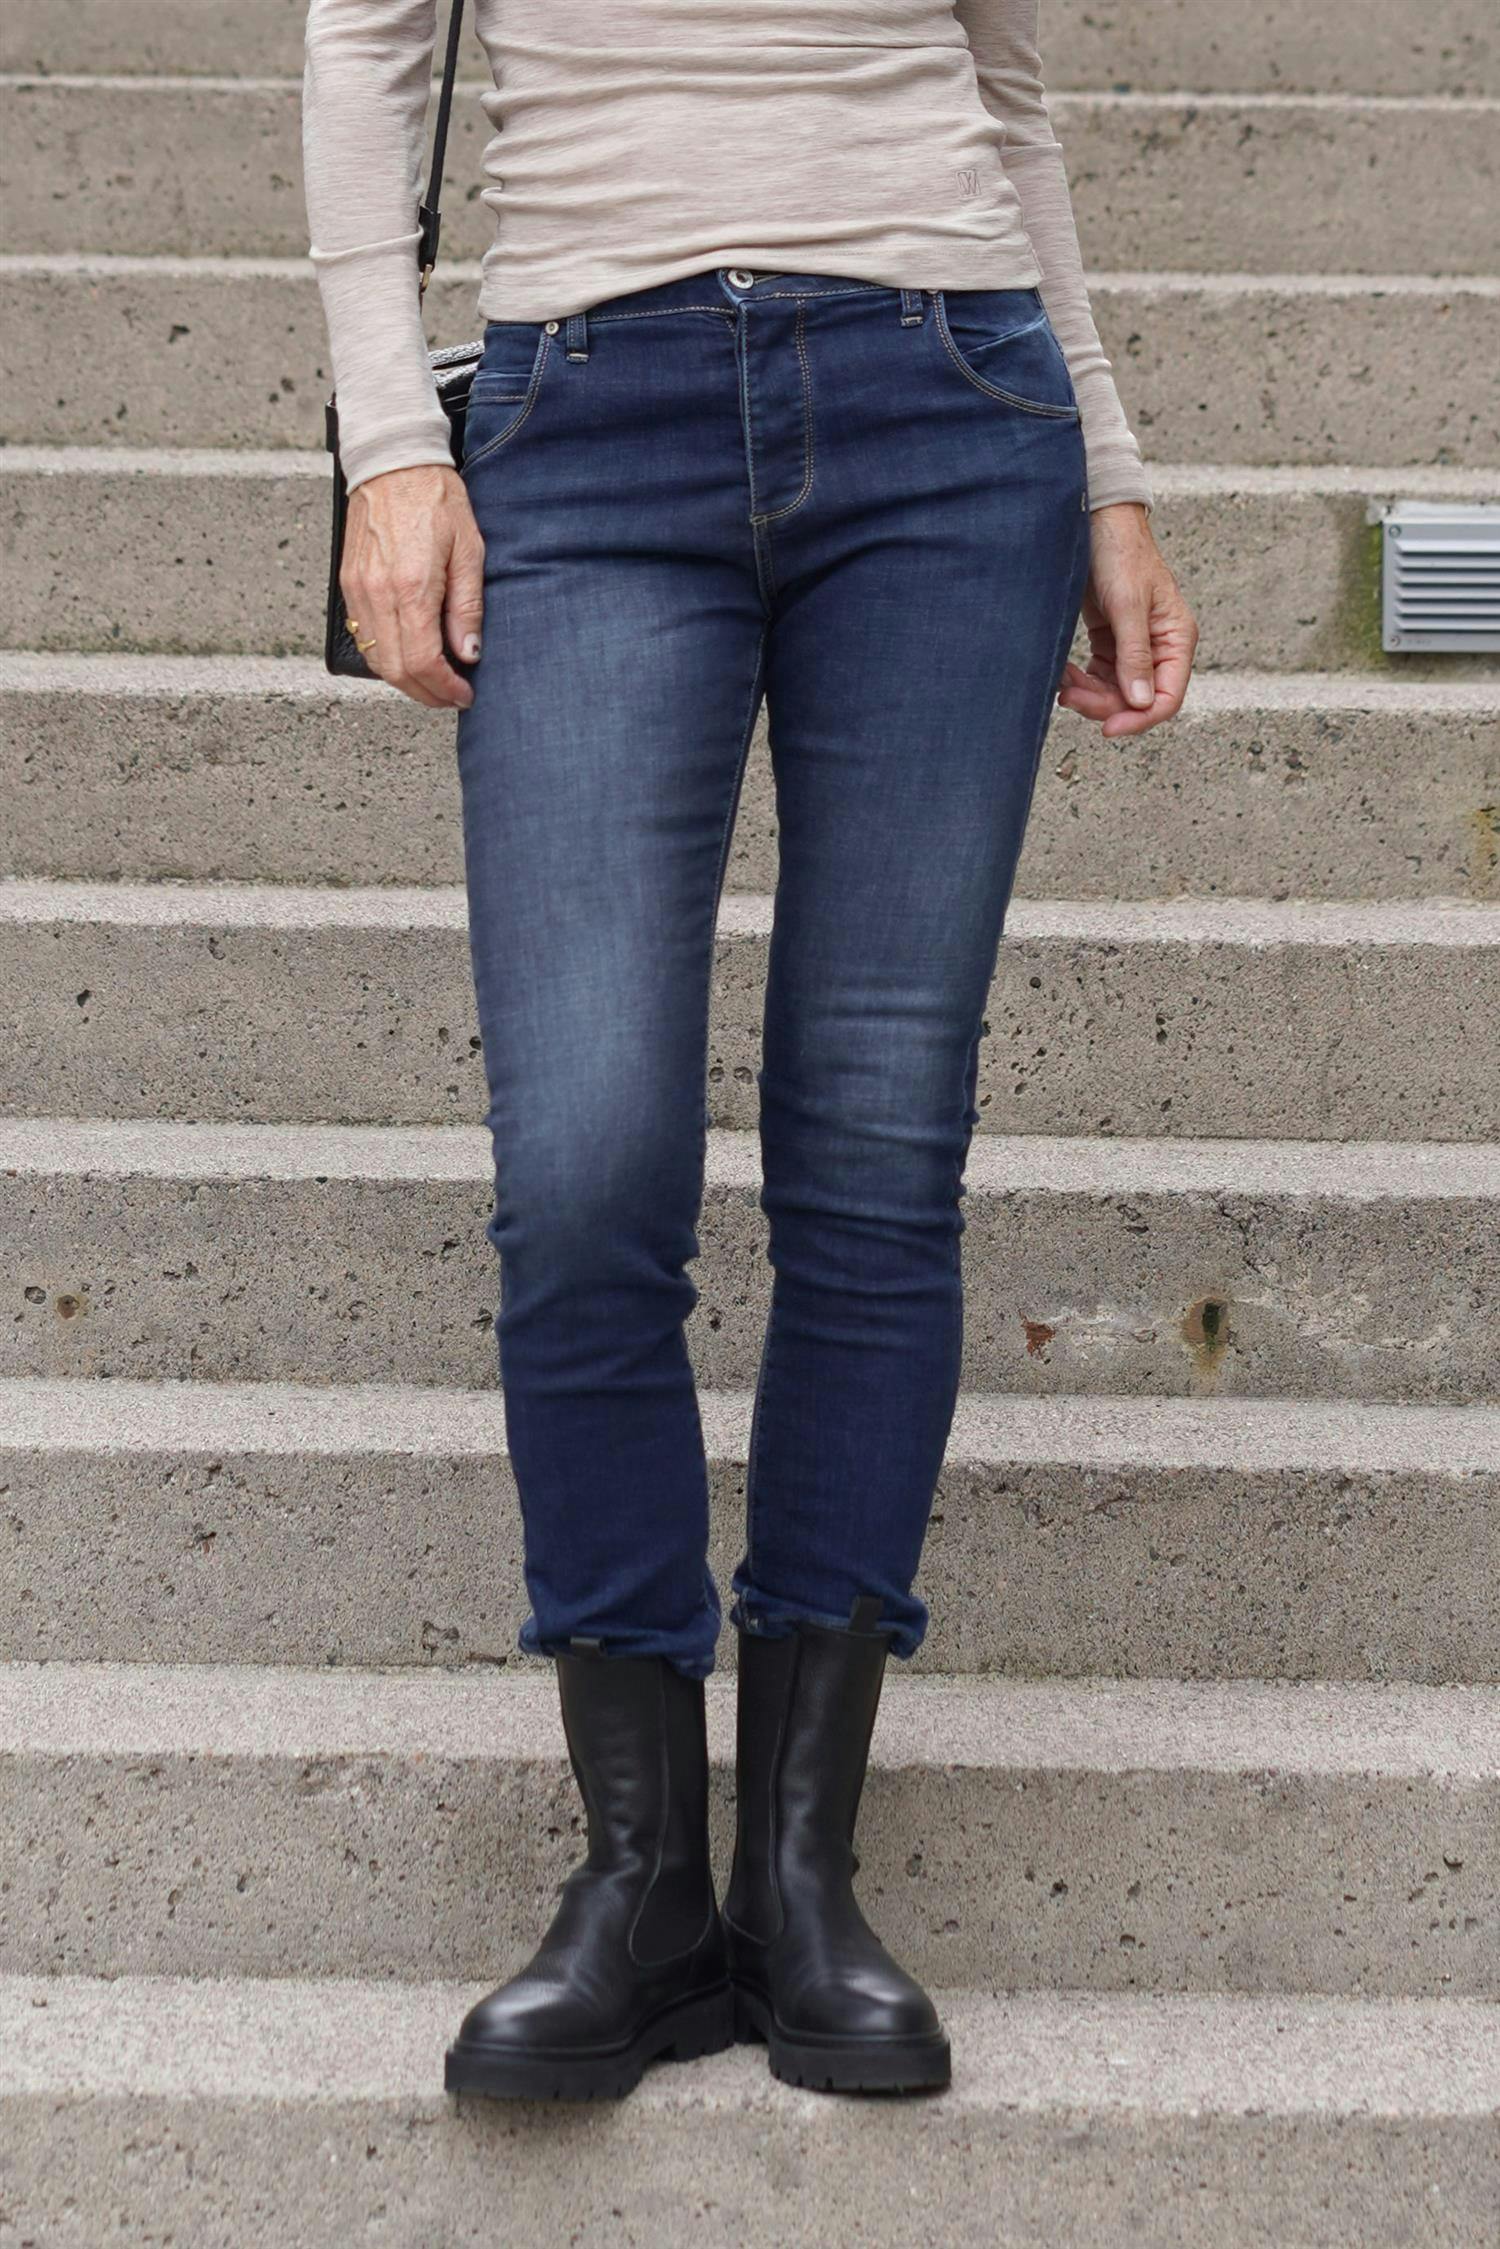 Simone bologna jeans